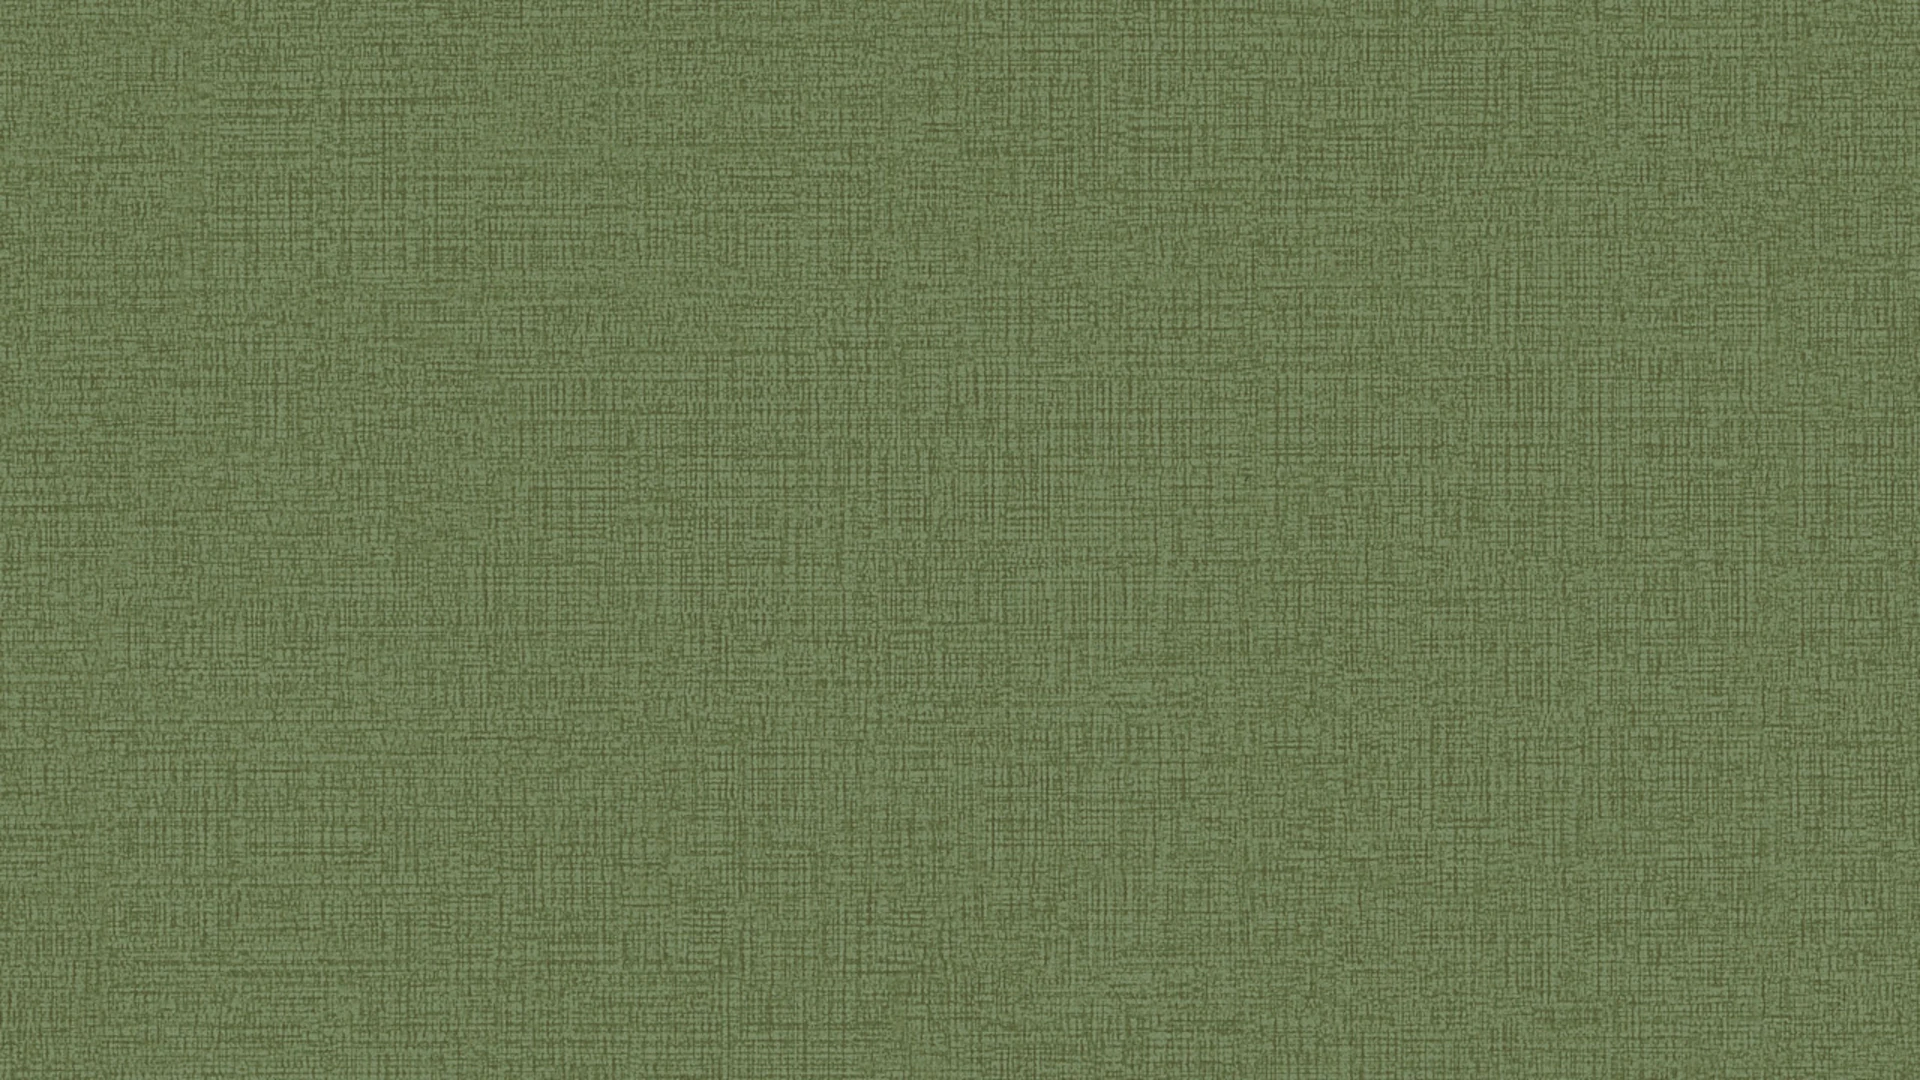 Vinyltapete grün Modern Klassisch Uni Character 773